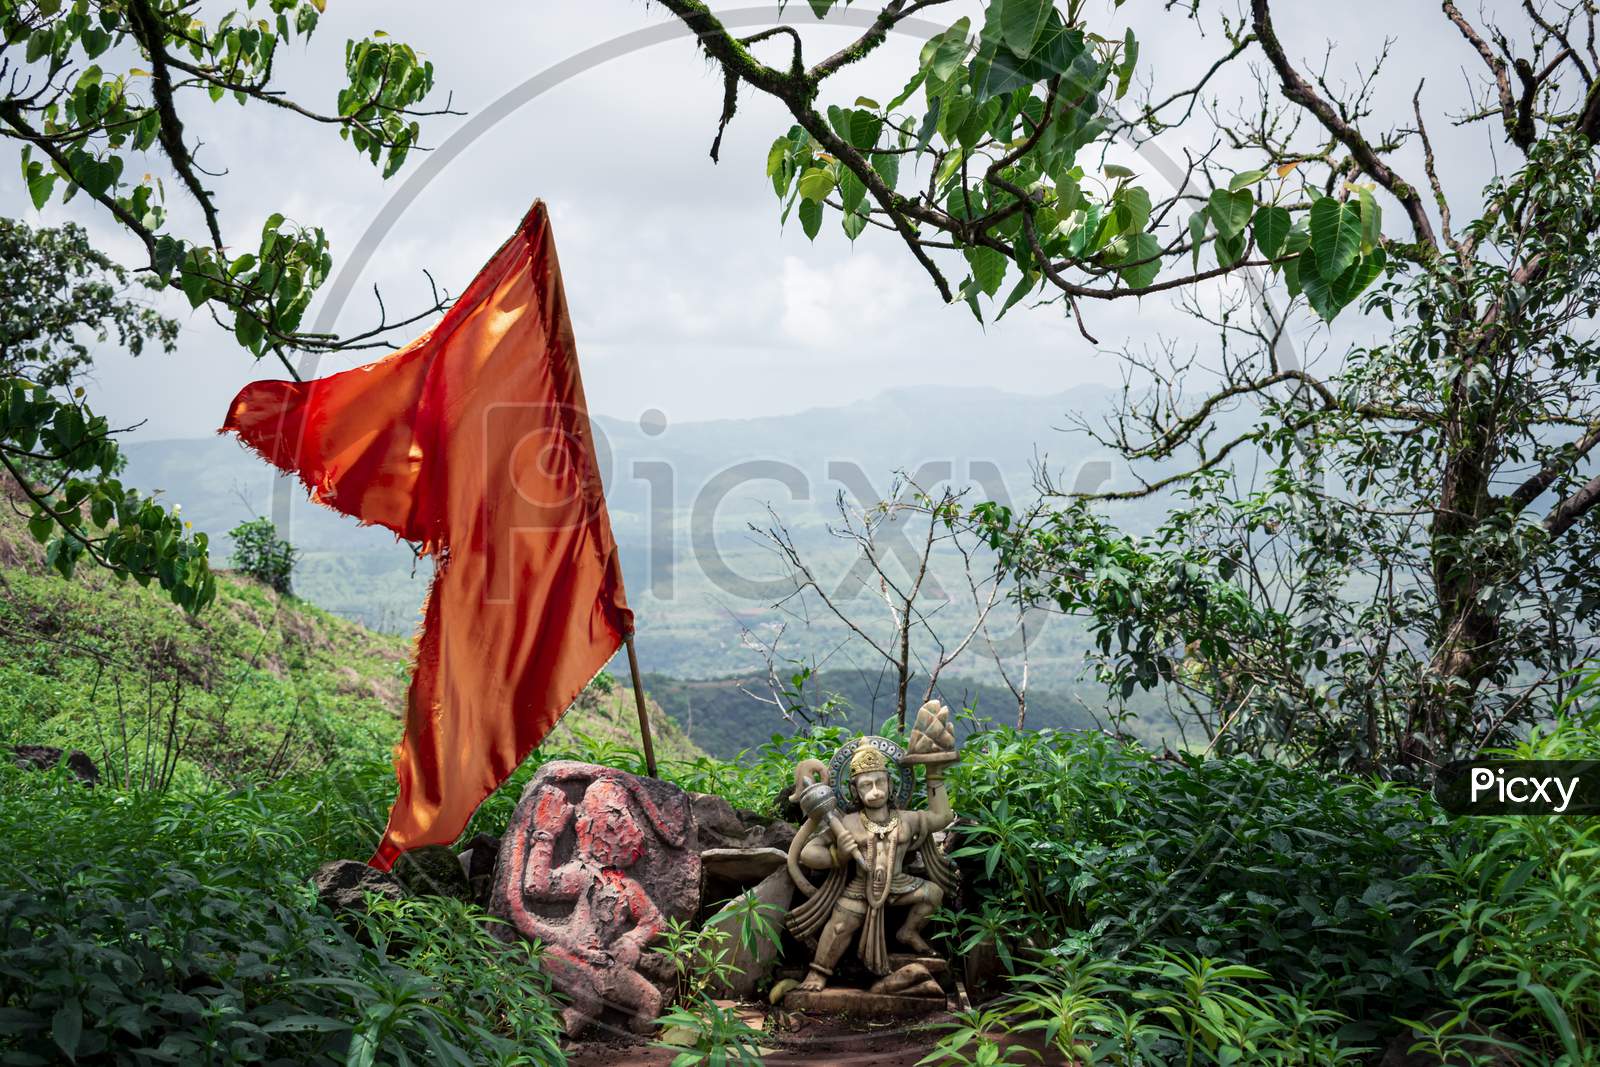 Hanuman idol with a saffron flag